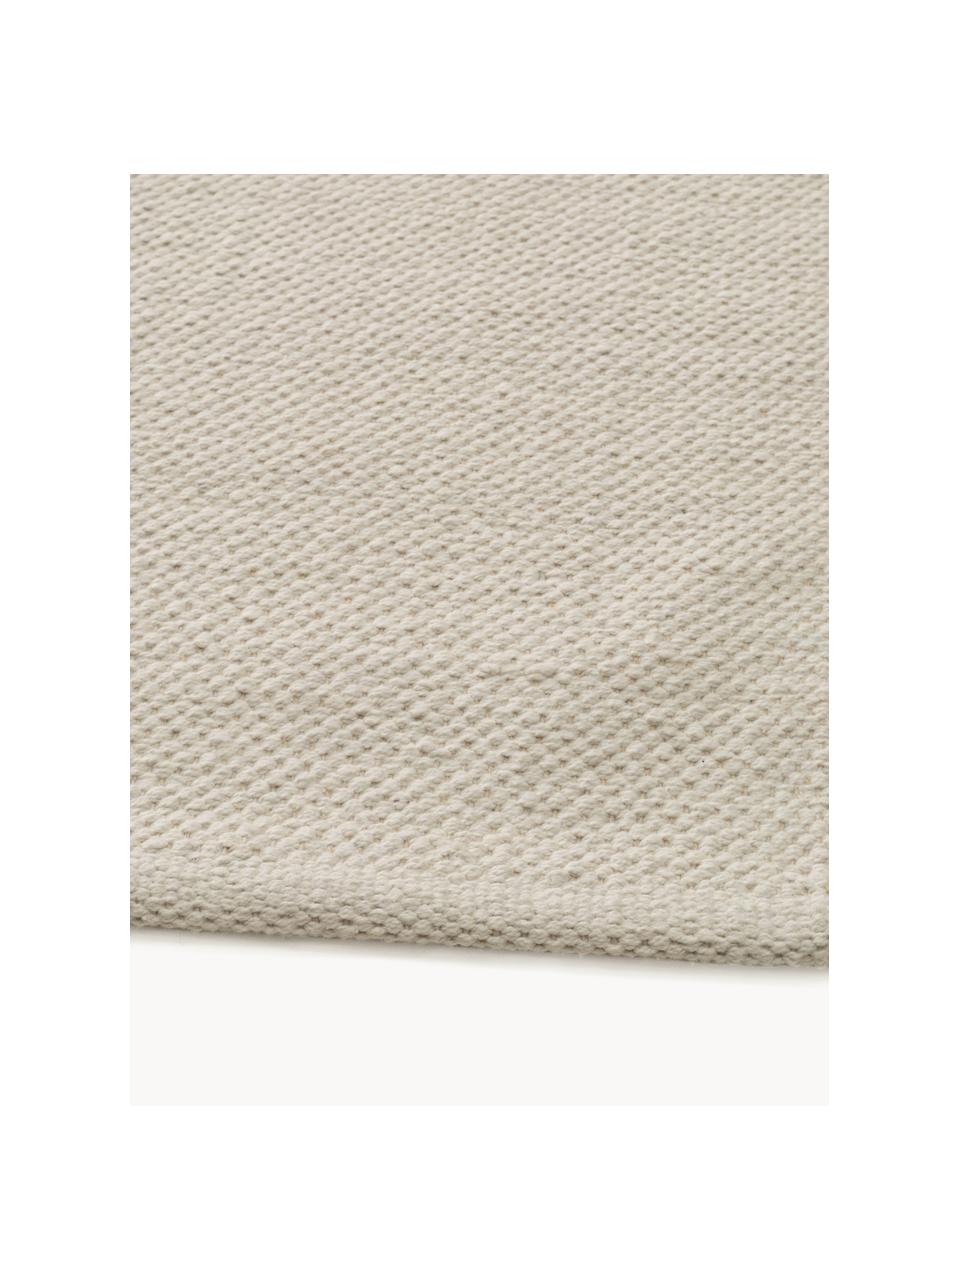 Tapis en coton tissé à la main Bo, 100% coton, Tons beiges, noir, larg. 120 x long. 170 cm (taille S)